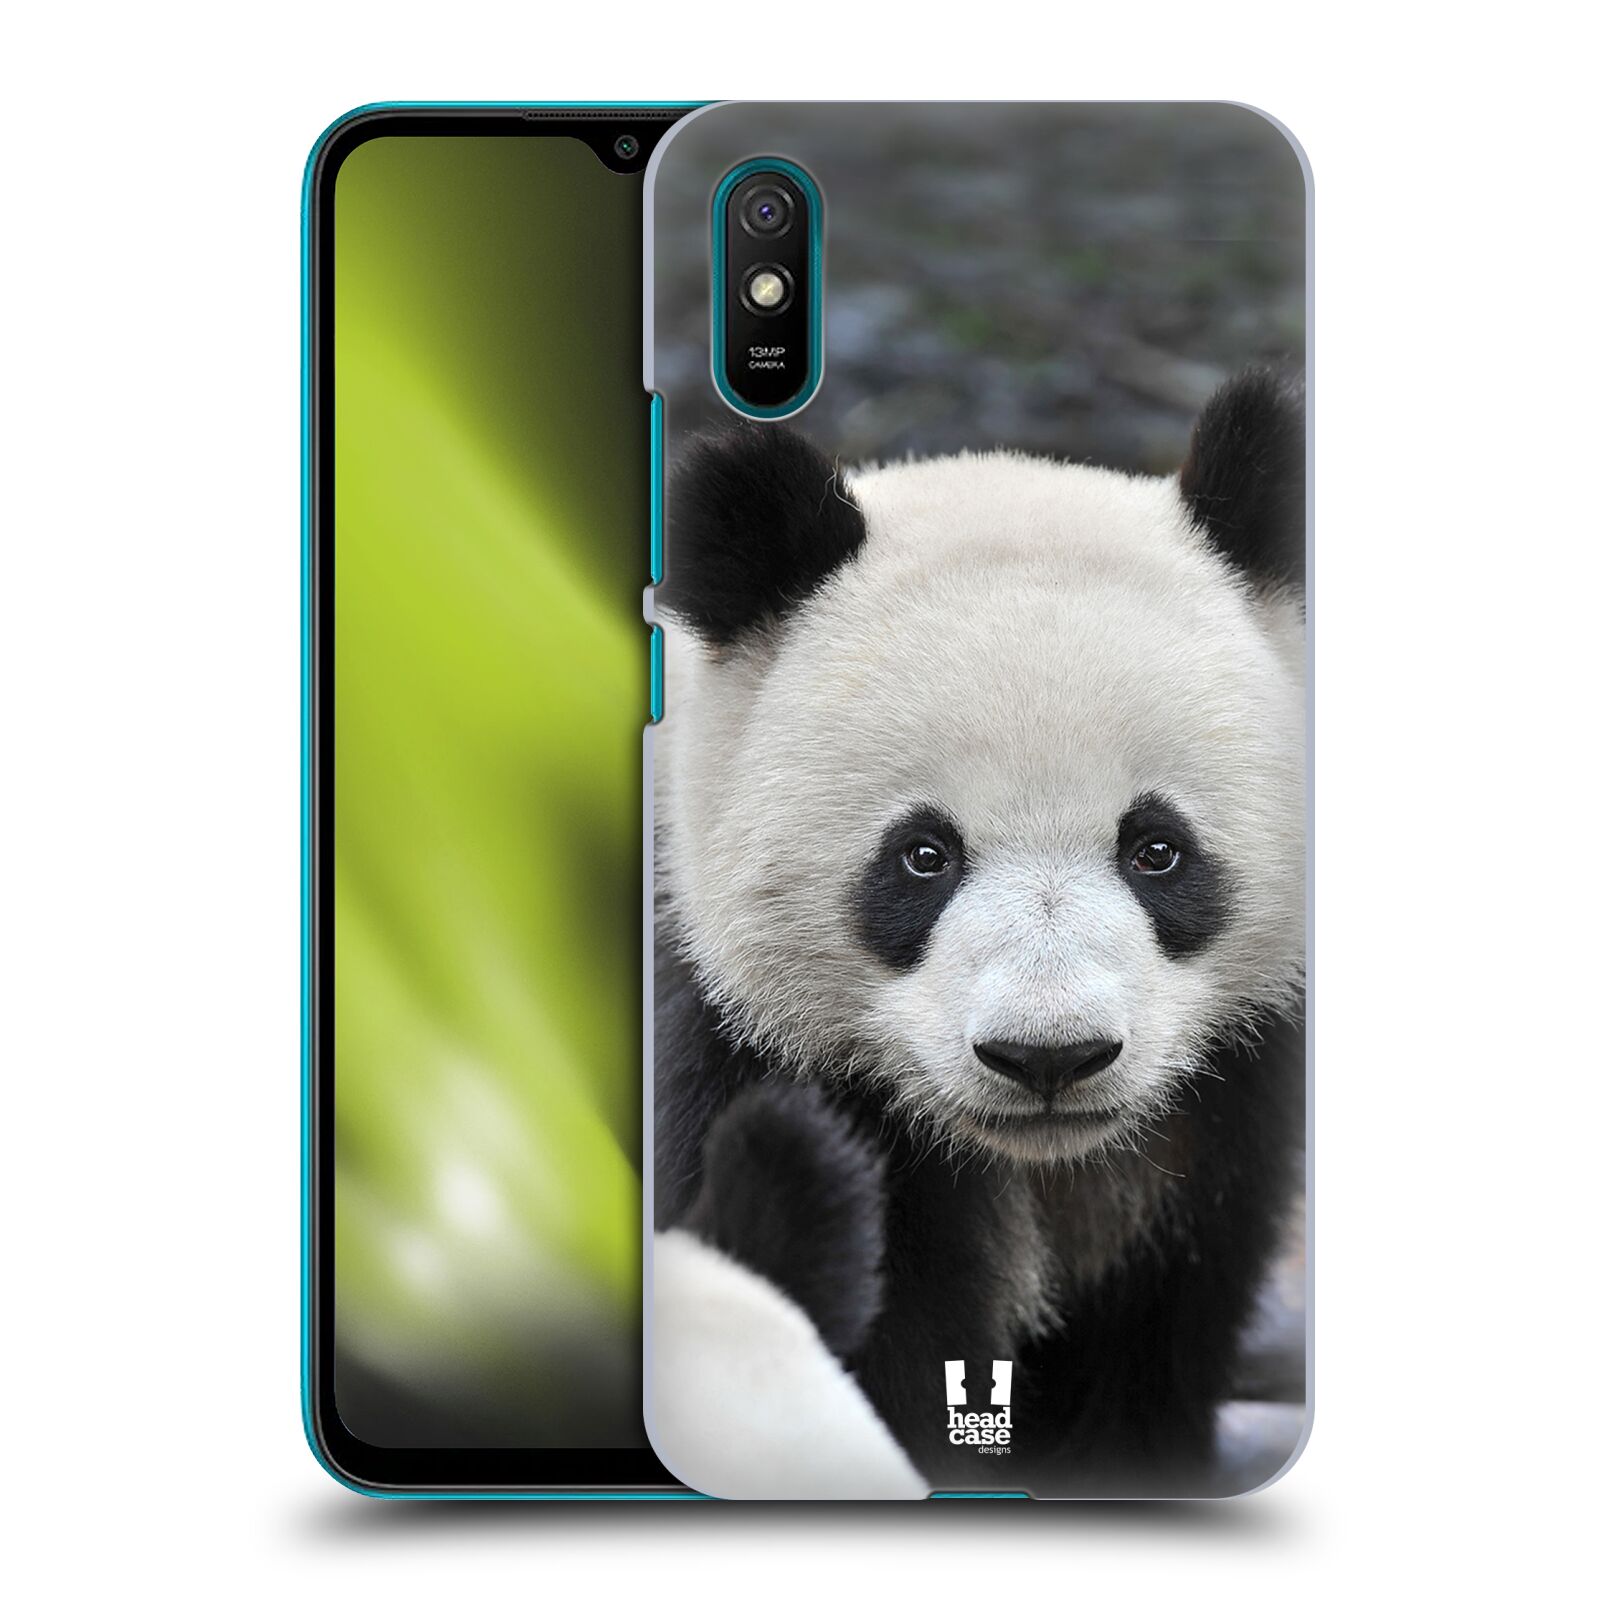 Zadní obal pro mobil Xiaomi Redmi 9A - HEAD CASE - Svět zvířat medvěd panda